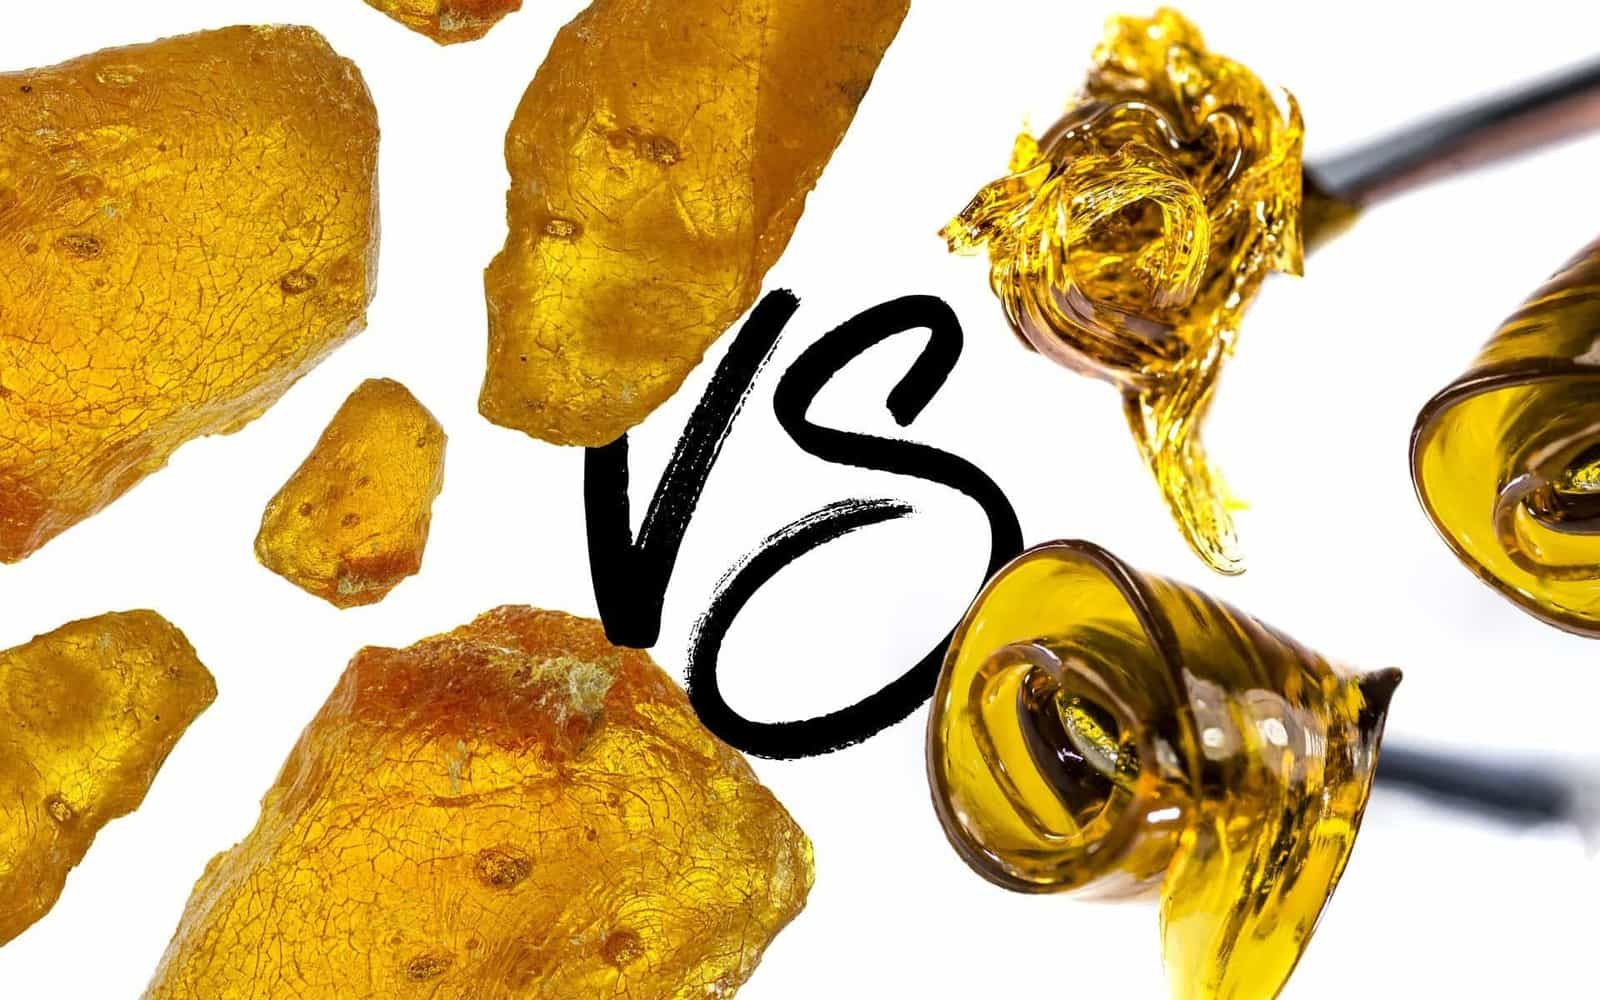 resin vs weed